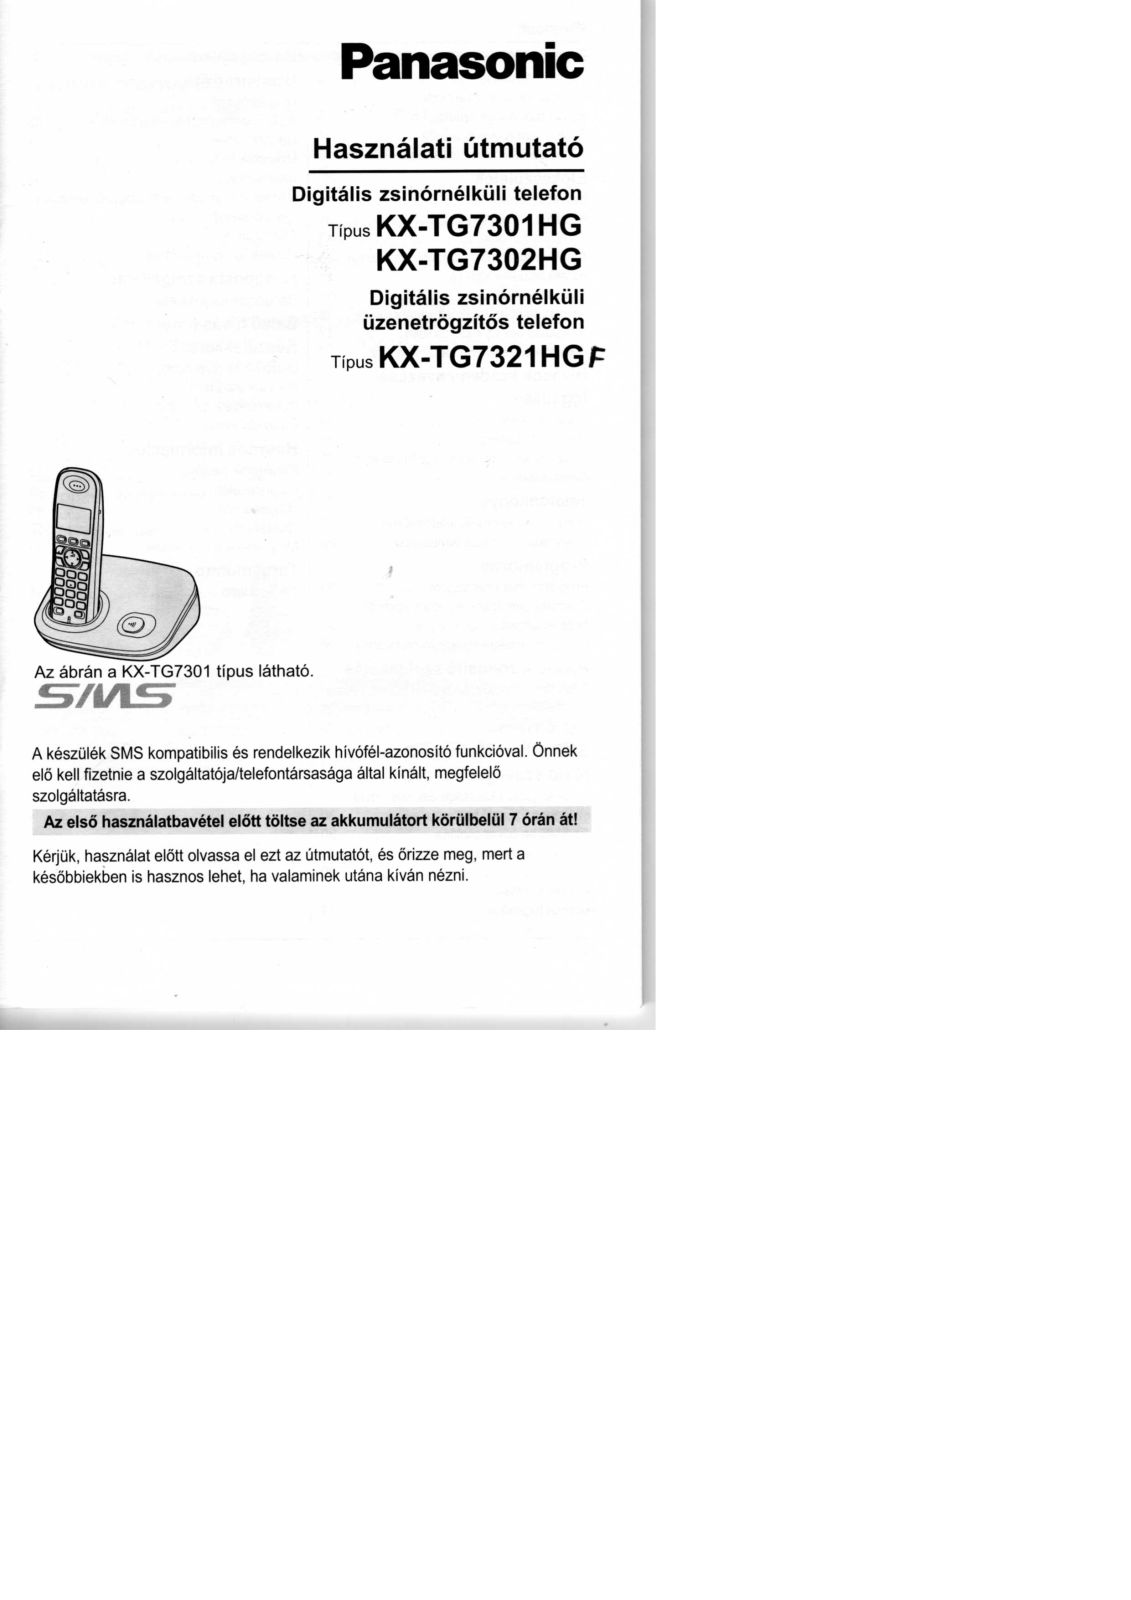 Panasonic KX-TG7302HG, KX-TG7301HG, KX-TG7321HGF User Manual